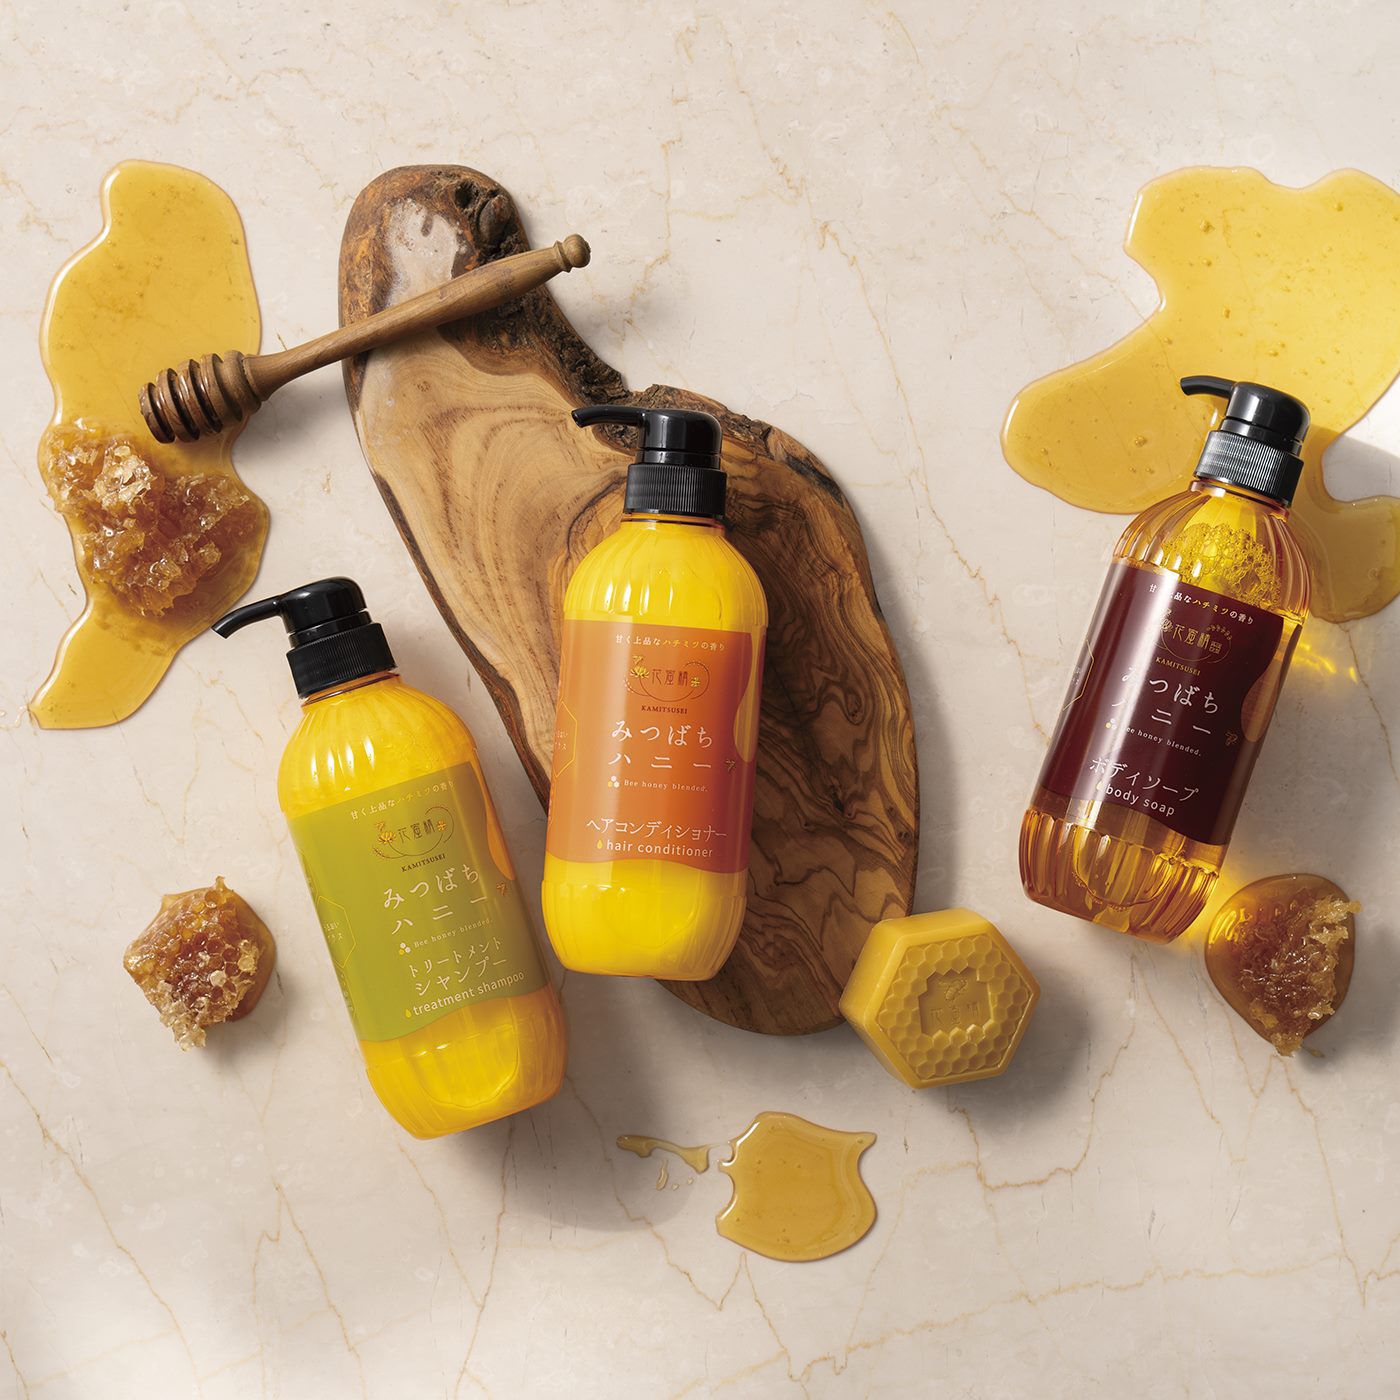 BEAUTY PROJECT|花蜜精　みつばちハニー　ボディソープの会|肌や髪をしっとりとした質感に導いてくれる花蜜精シリーズ。ぜひお試しください。